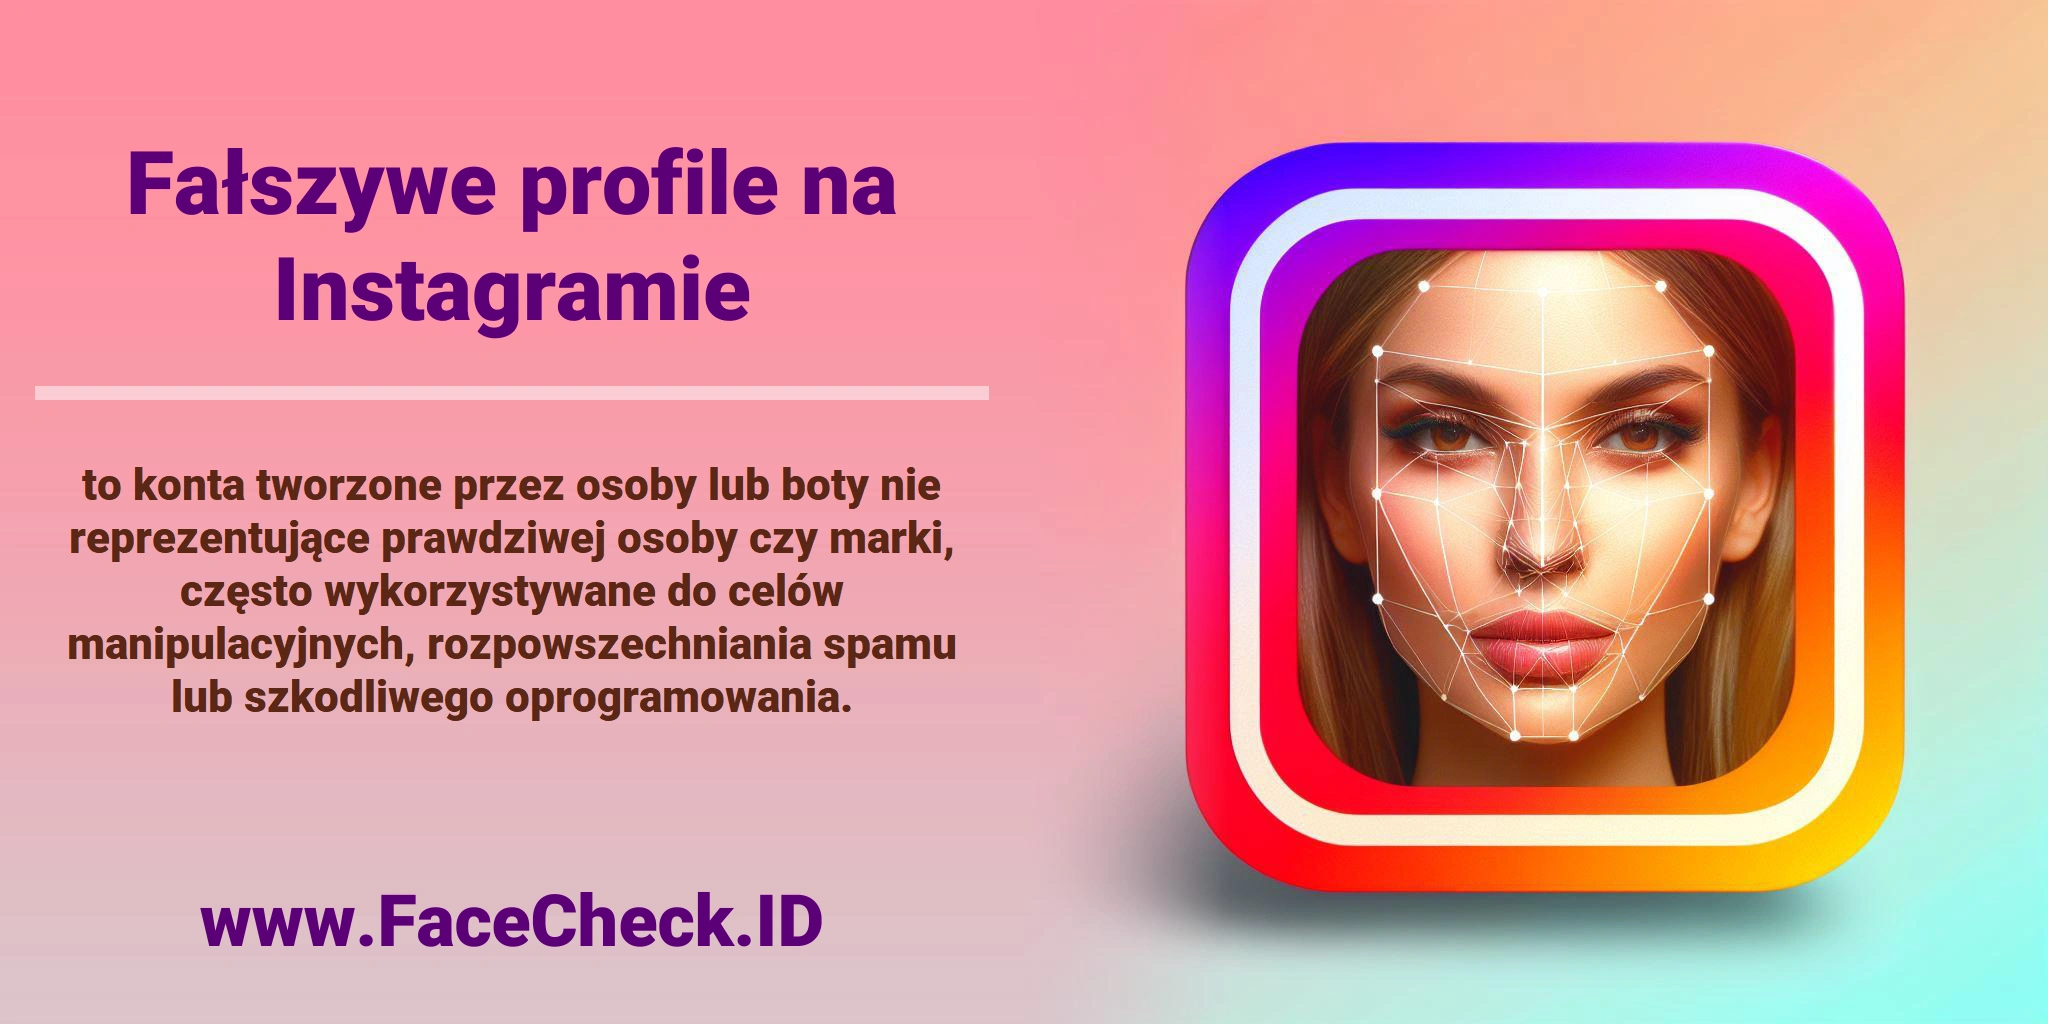 <b>Fałszywe profile na Instagramie</b> to konta tworzone przez osoby lub boty nie reprezentujące prawdziwej osoby czy marki, często wykorzystywane do celów manipulacyjnych, rozpowszechniania spamu lub szkodliwego oprogramowania.